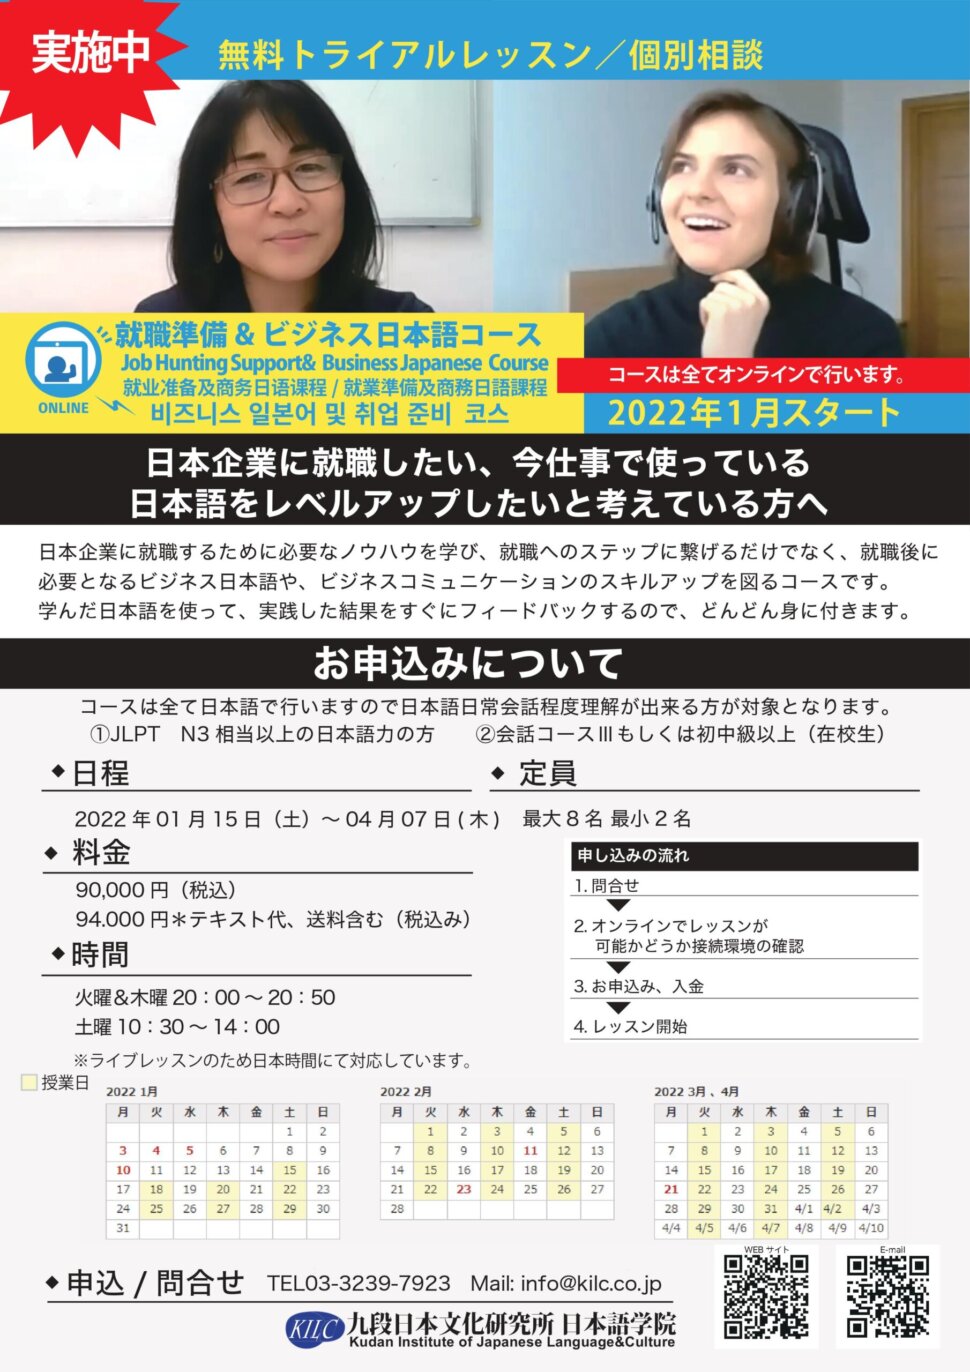 トライアルレッスン開催決定 Trial Lesson for Online Job Hunting Support & Business Japanese Course